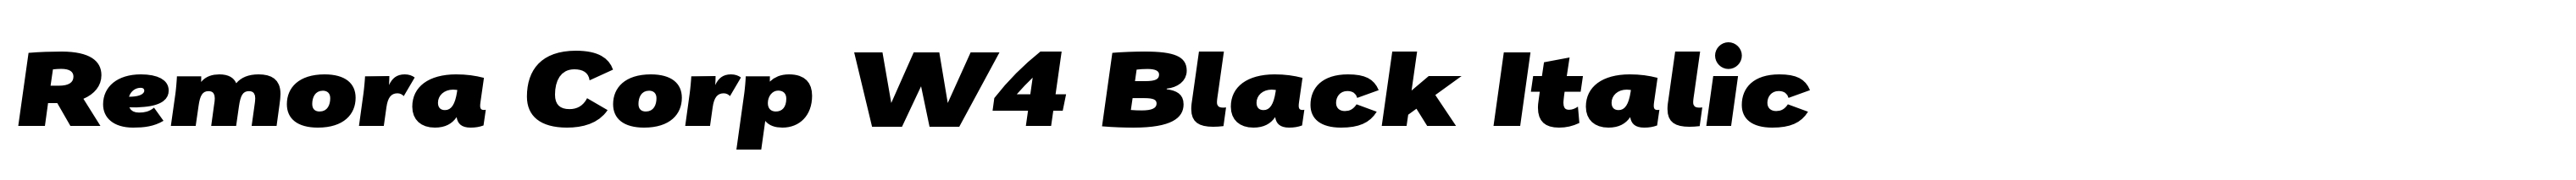 Remora Corp W4 Black Italic